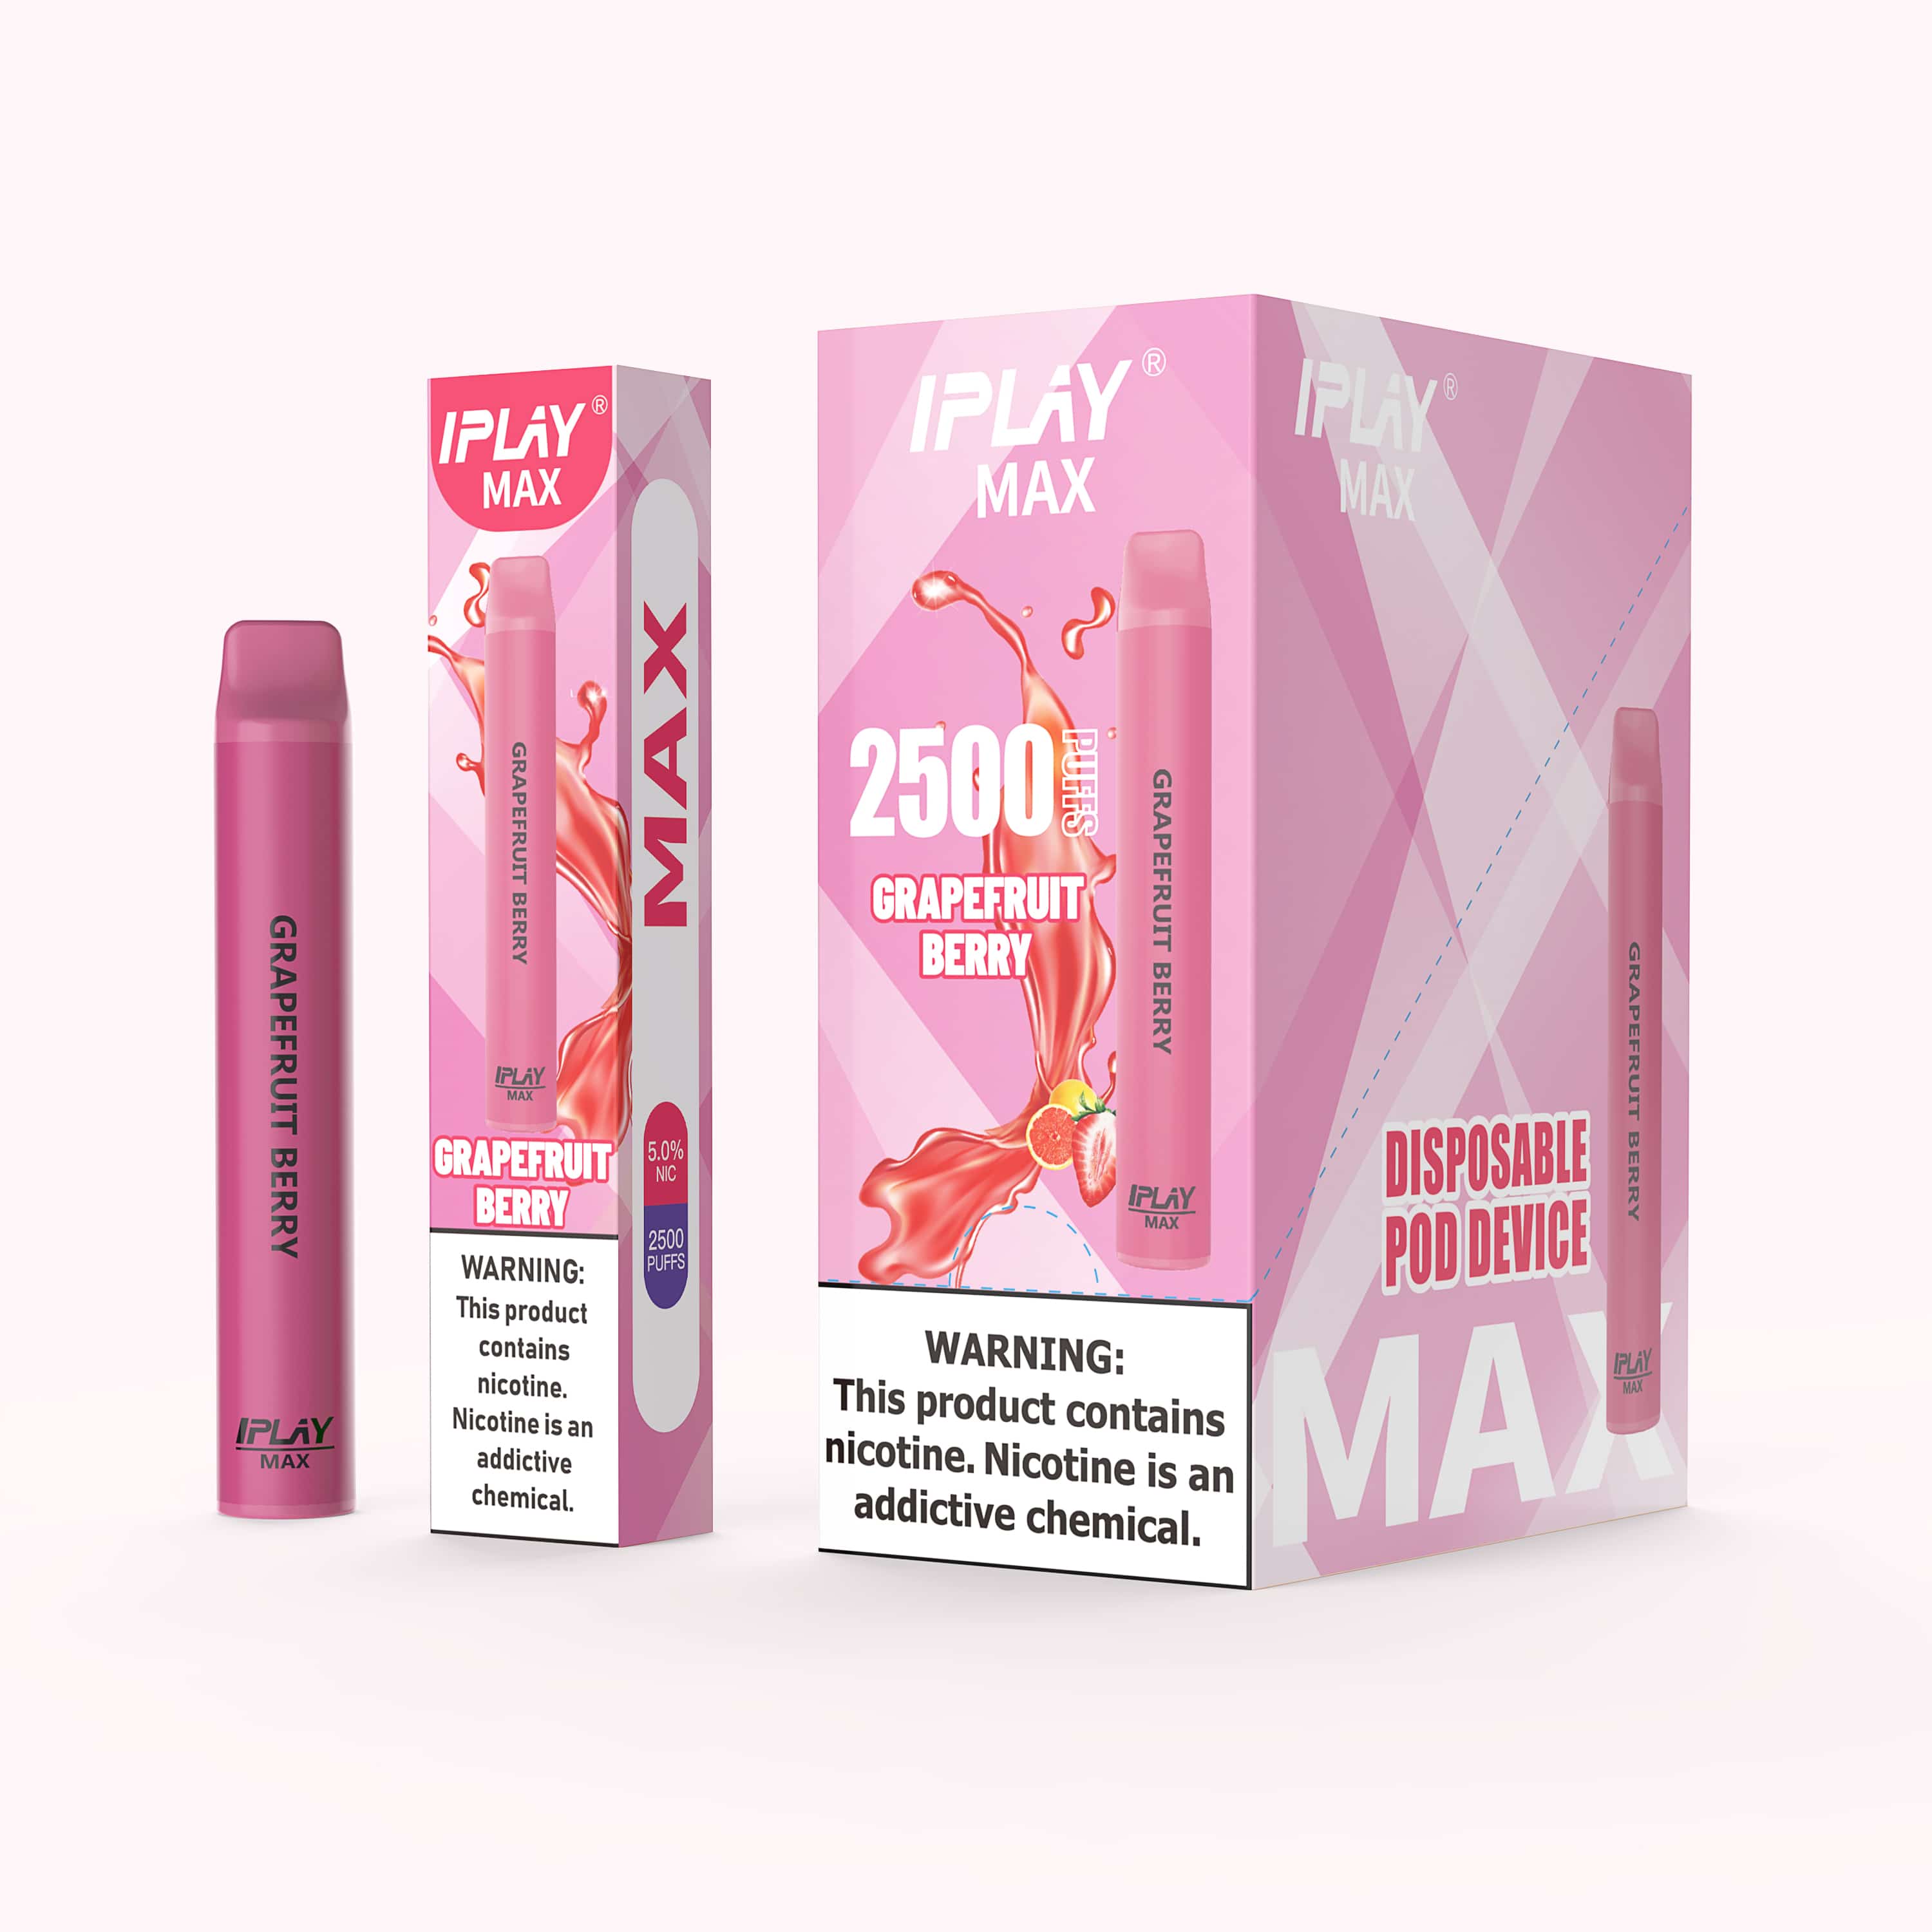 Pack 50 piezas Iplay max $120 c/u (2600 puffs) - VapeoMex